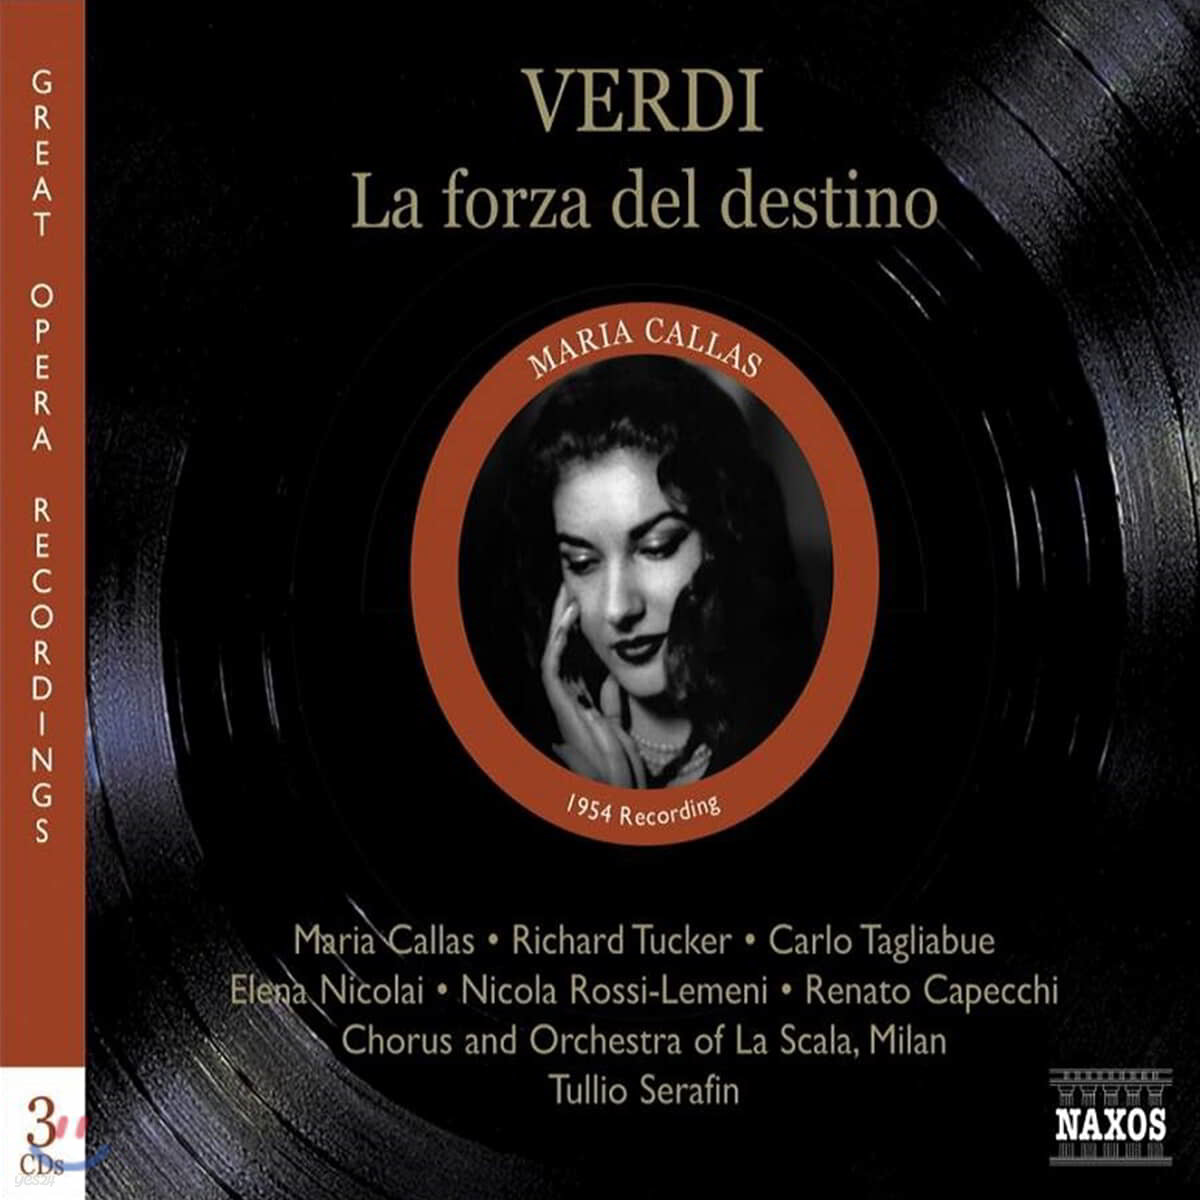 Maria Callas 베르디: 운명의 힘 (Verdi: La forza del destino)